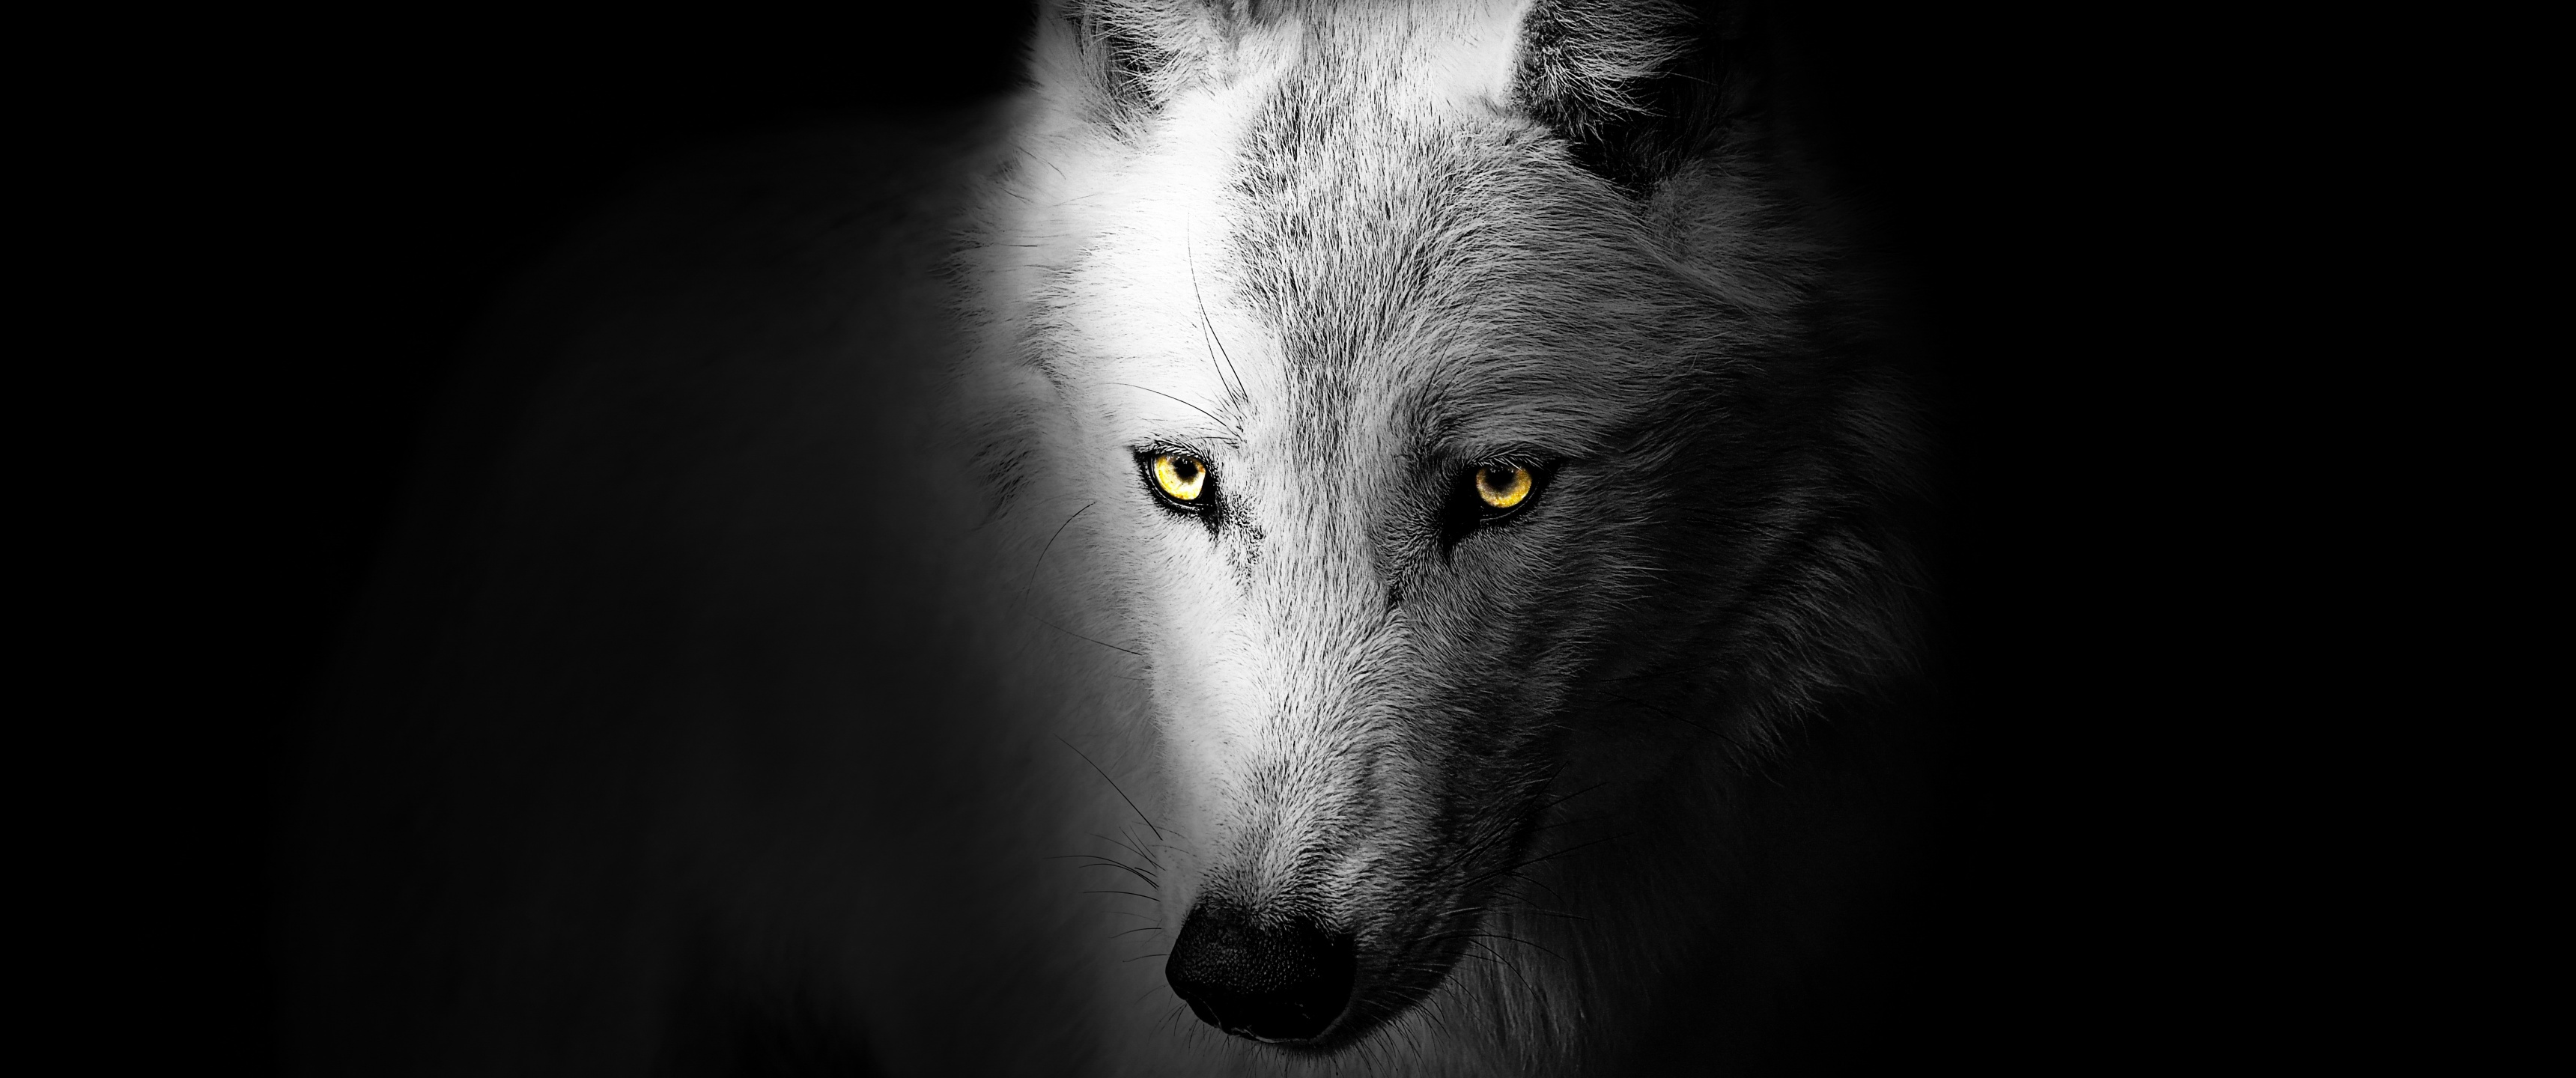 Con sói - một loài thú hoang dã với vẻ đẹp mạnh mẽ và hoang dã. Cùng xem những hình ảnh tuyệt đẹp về loài động vật này ngay bây giờ!